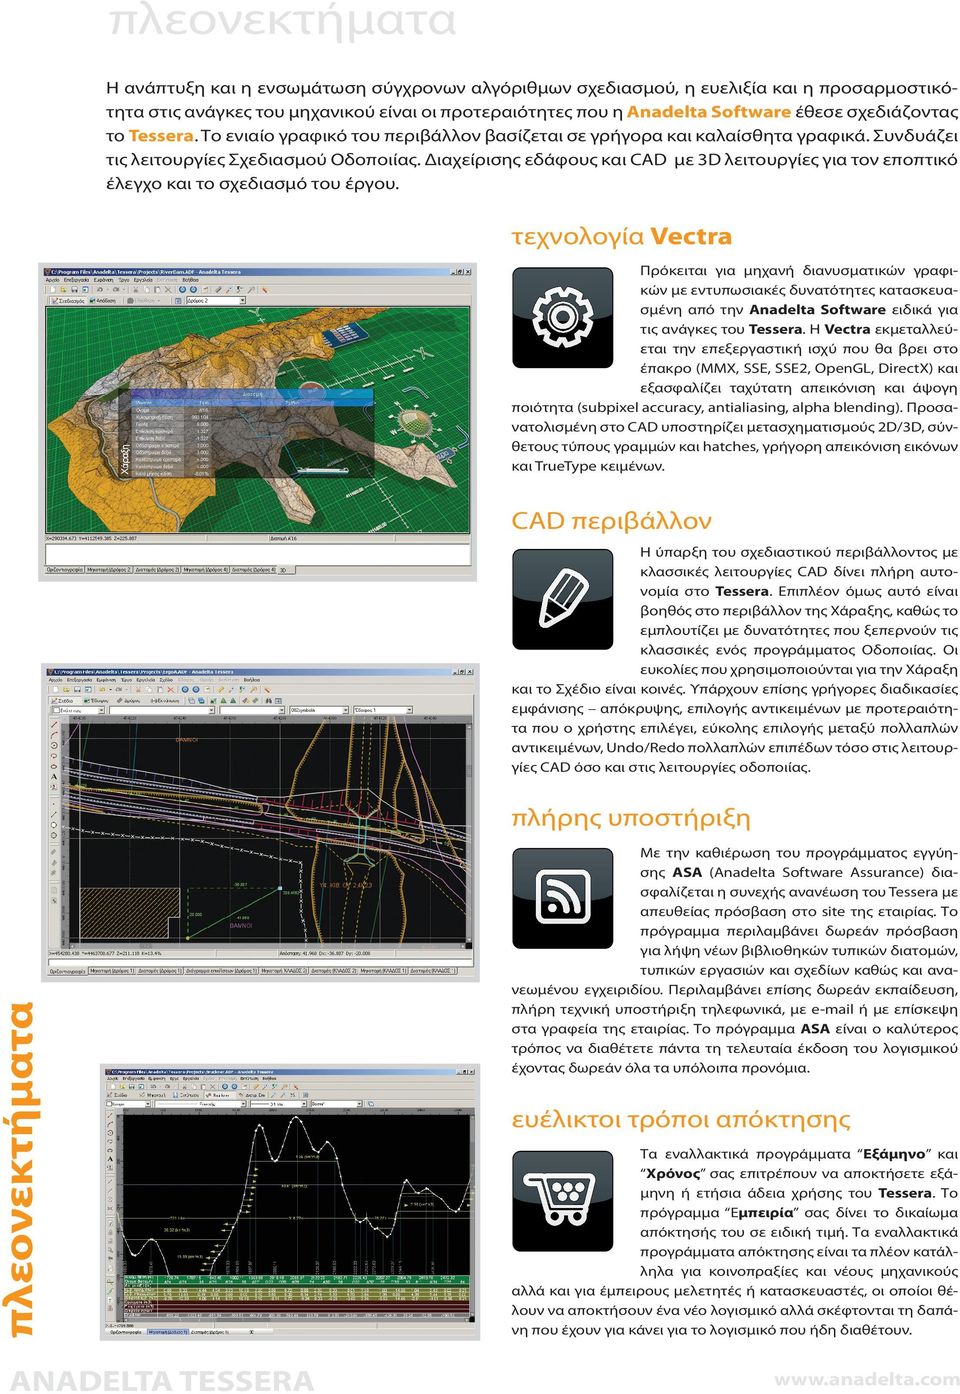 Διαχείρισης εδάφους και CAD με 3D λειτουργίες για τον εποπτικό έλεγχο και το σχεδιασμό του έργου.